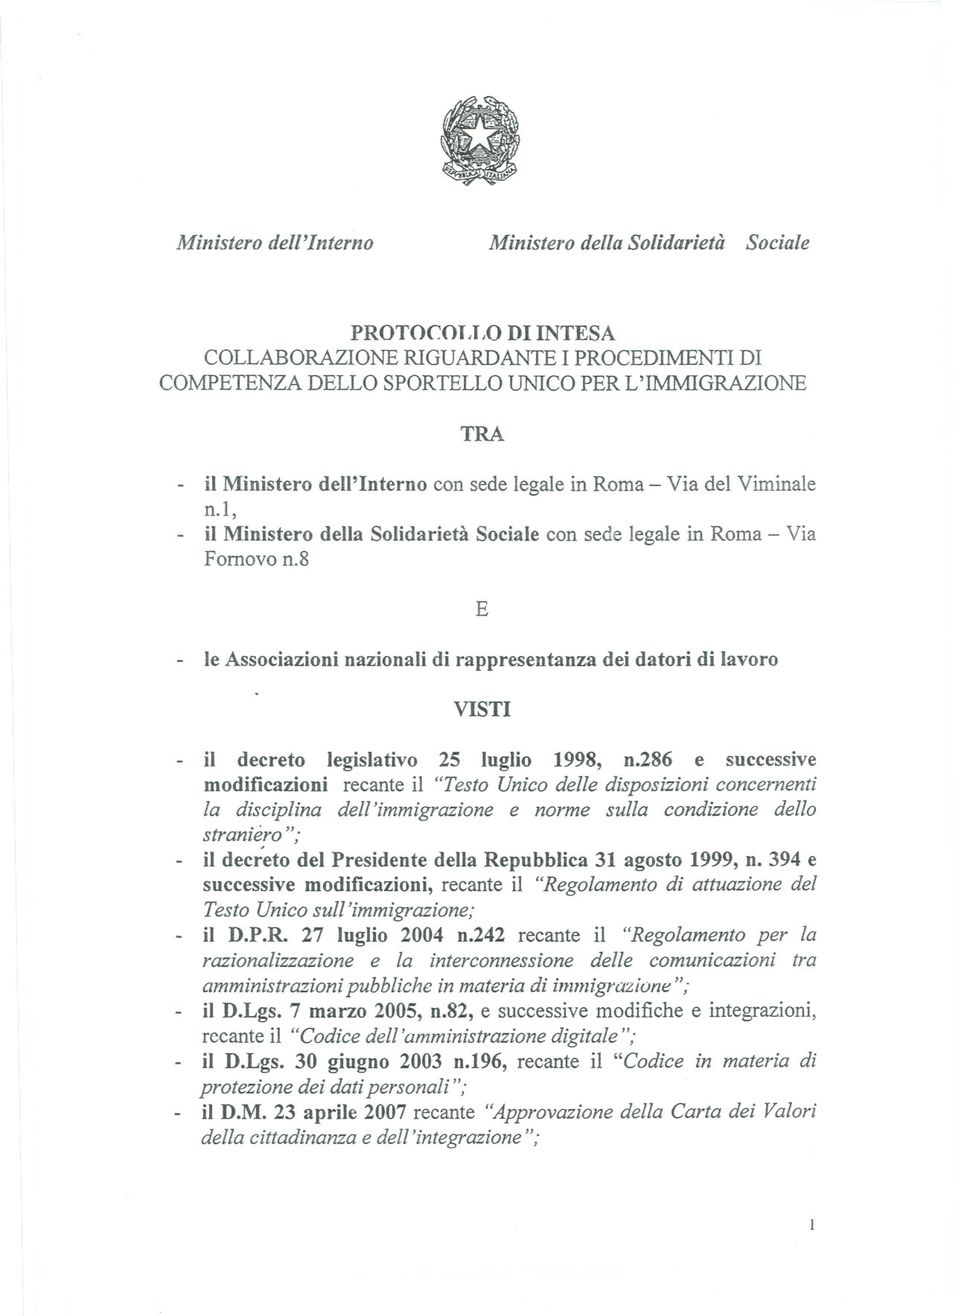 8 E - le Associazioni nazionali di rappresentanza dei datori di lavoro VISTI - il decreto legislativo 25 luglio 1998, n.